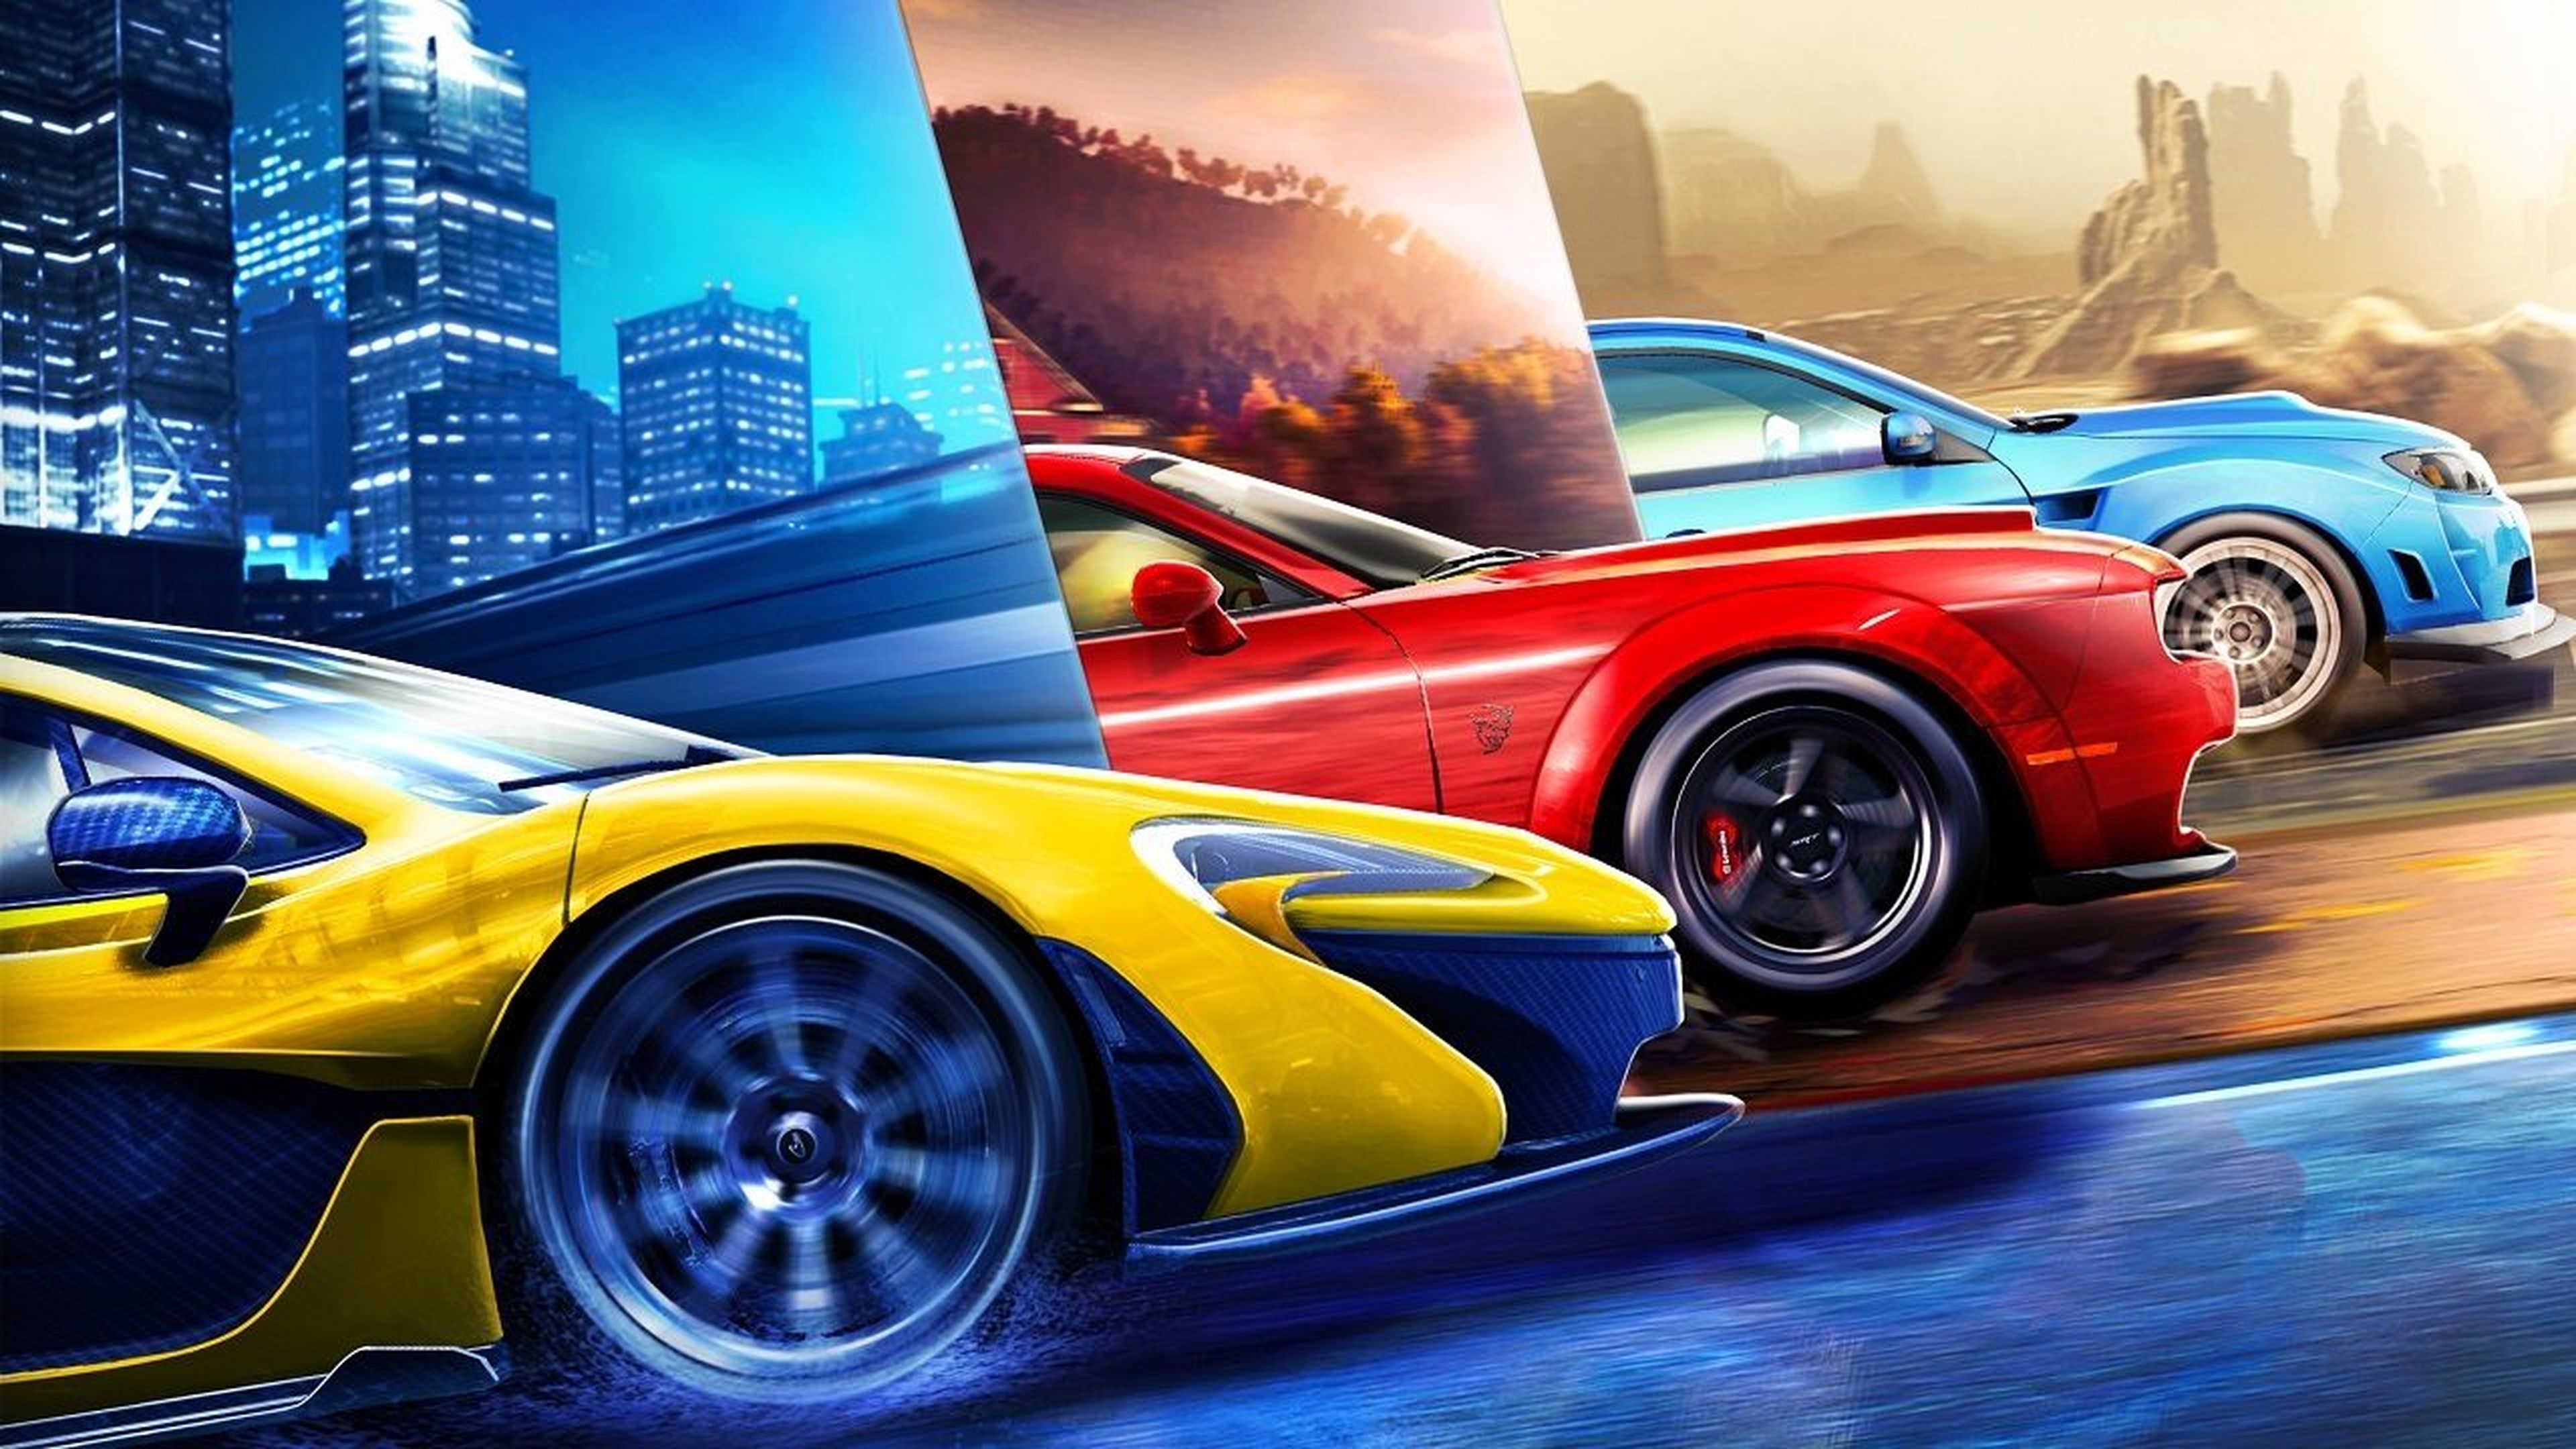 Los 7 mejores juegos Android gratis de coches